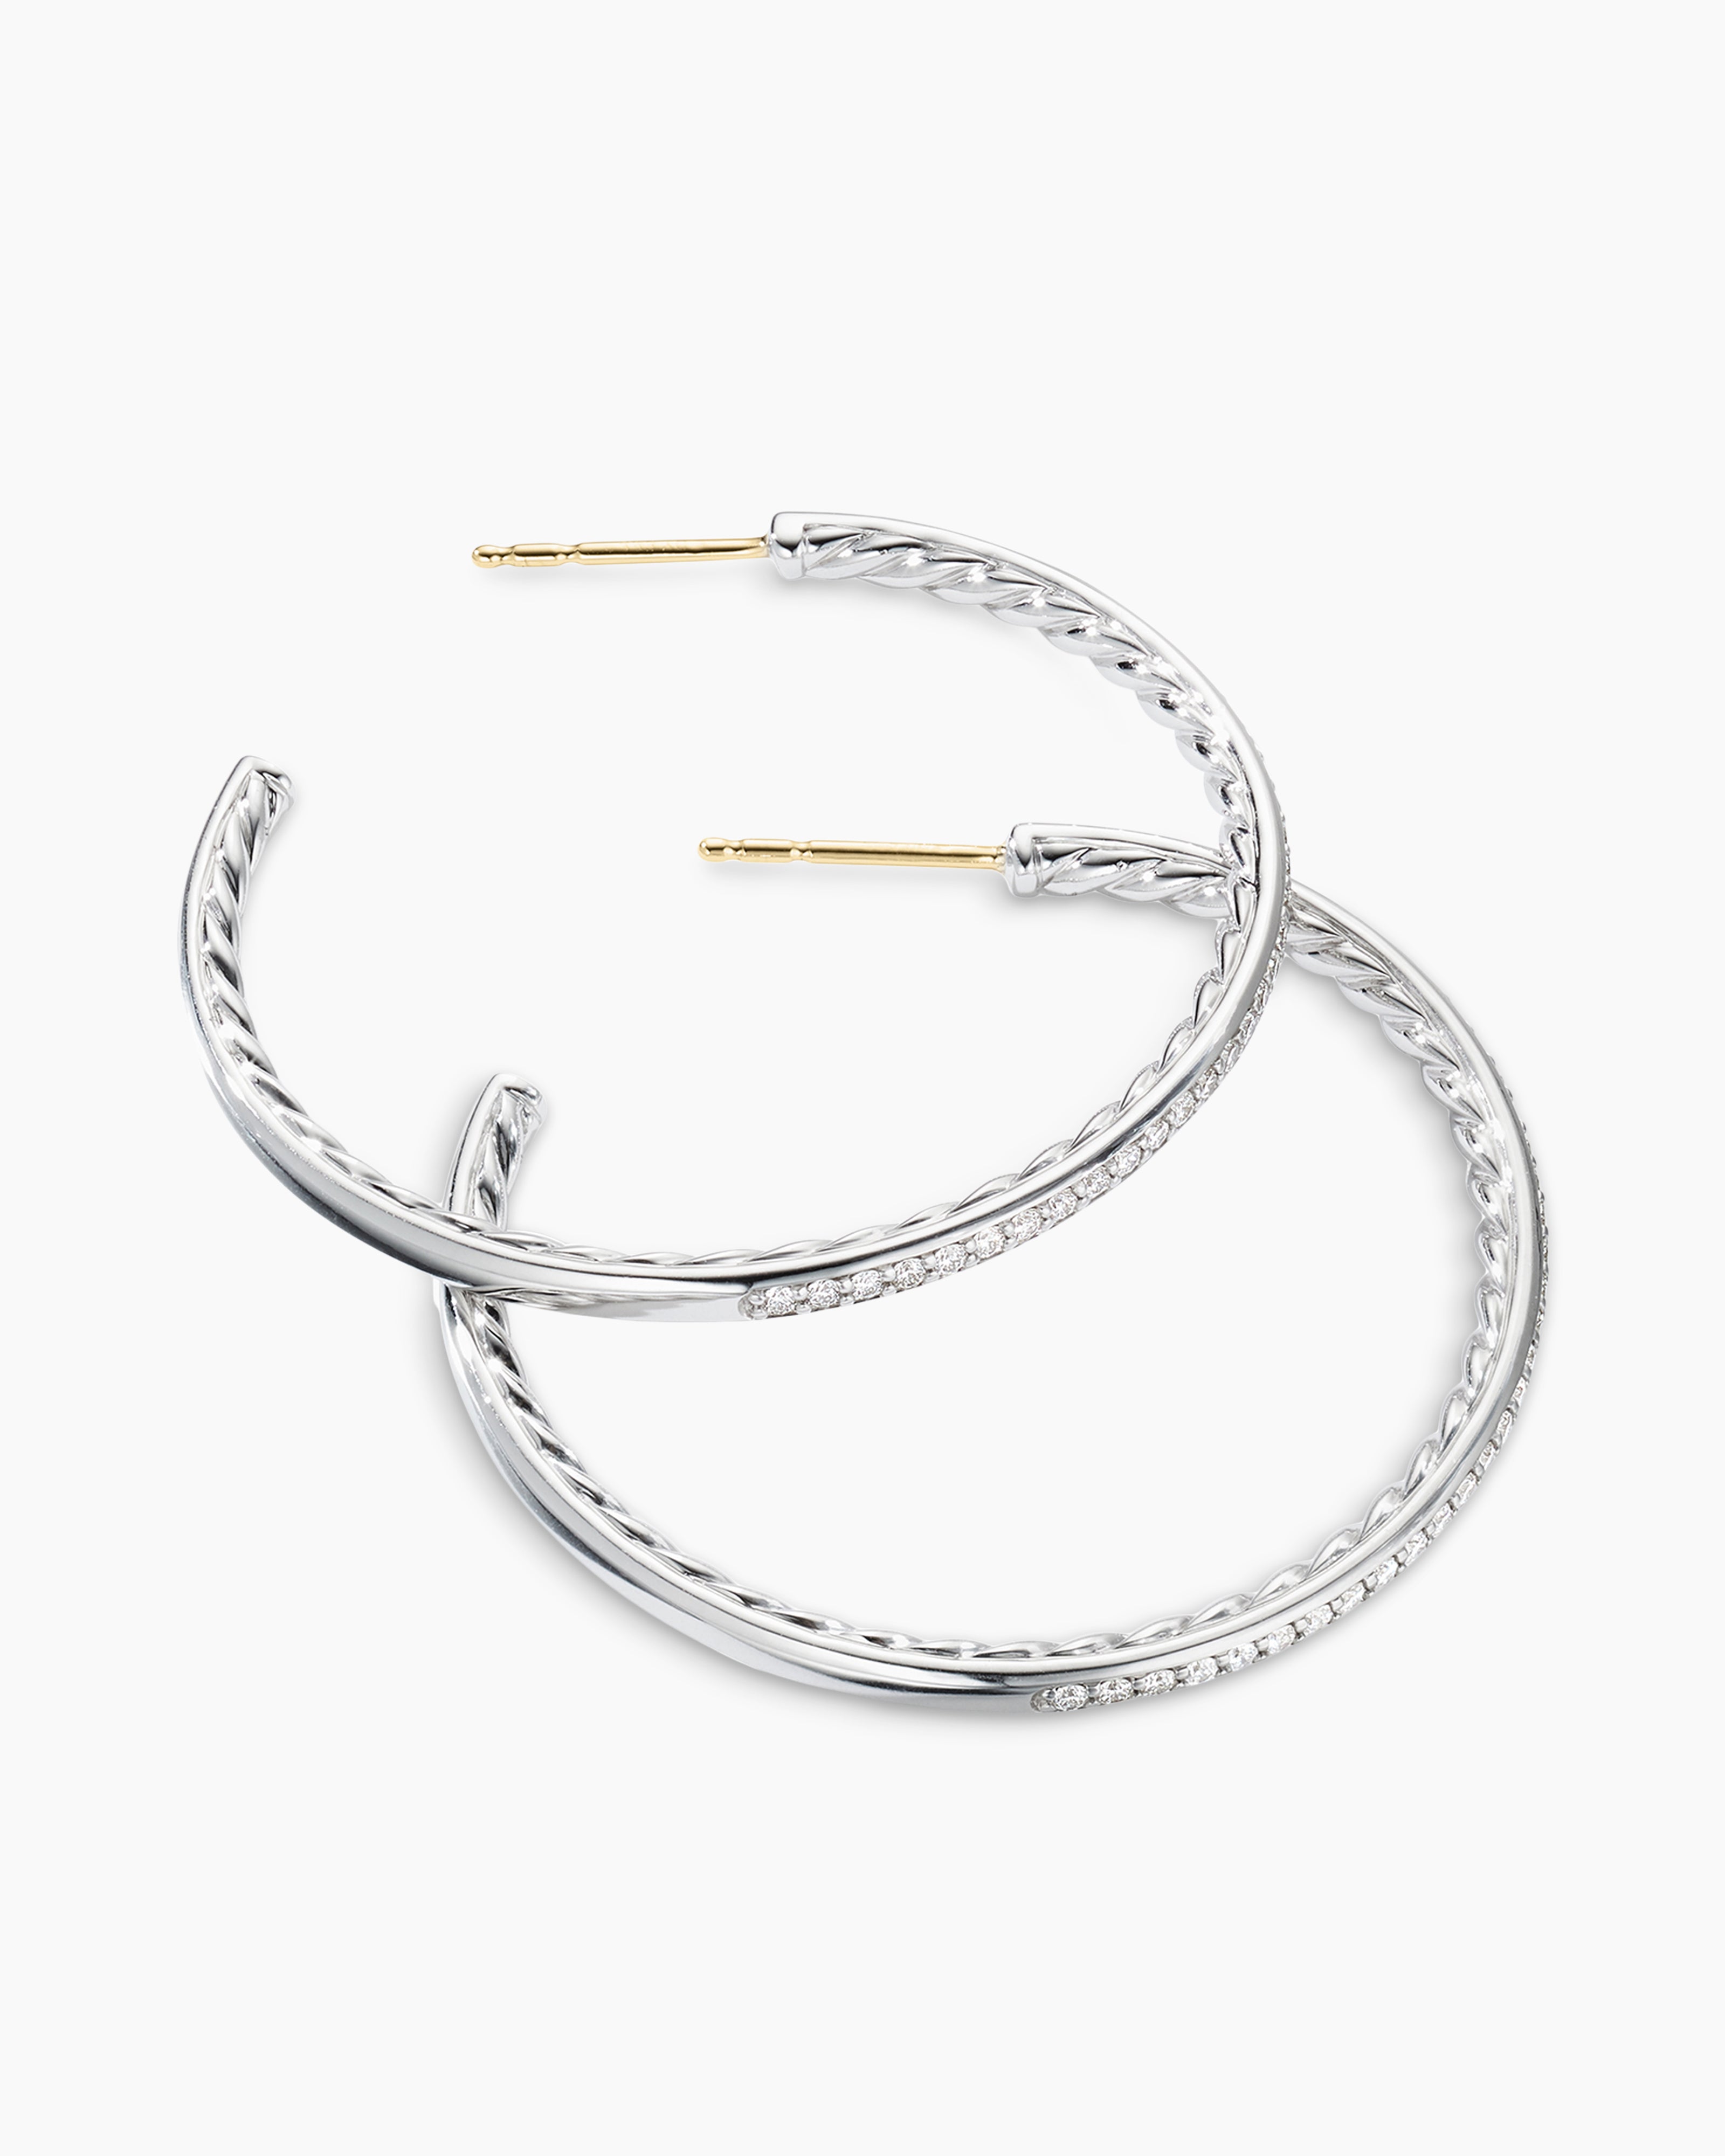 Buy Sterling Silver hoop earrings Online - Unniyarcha